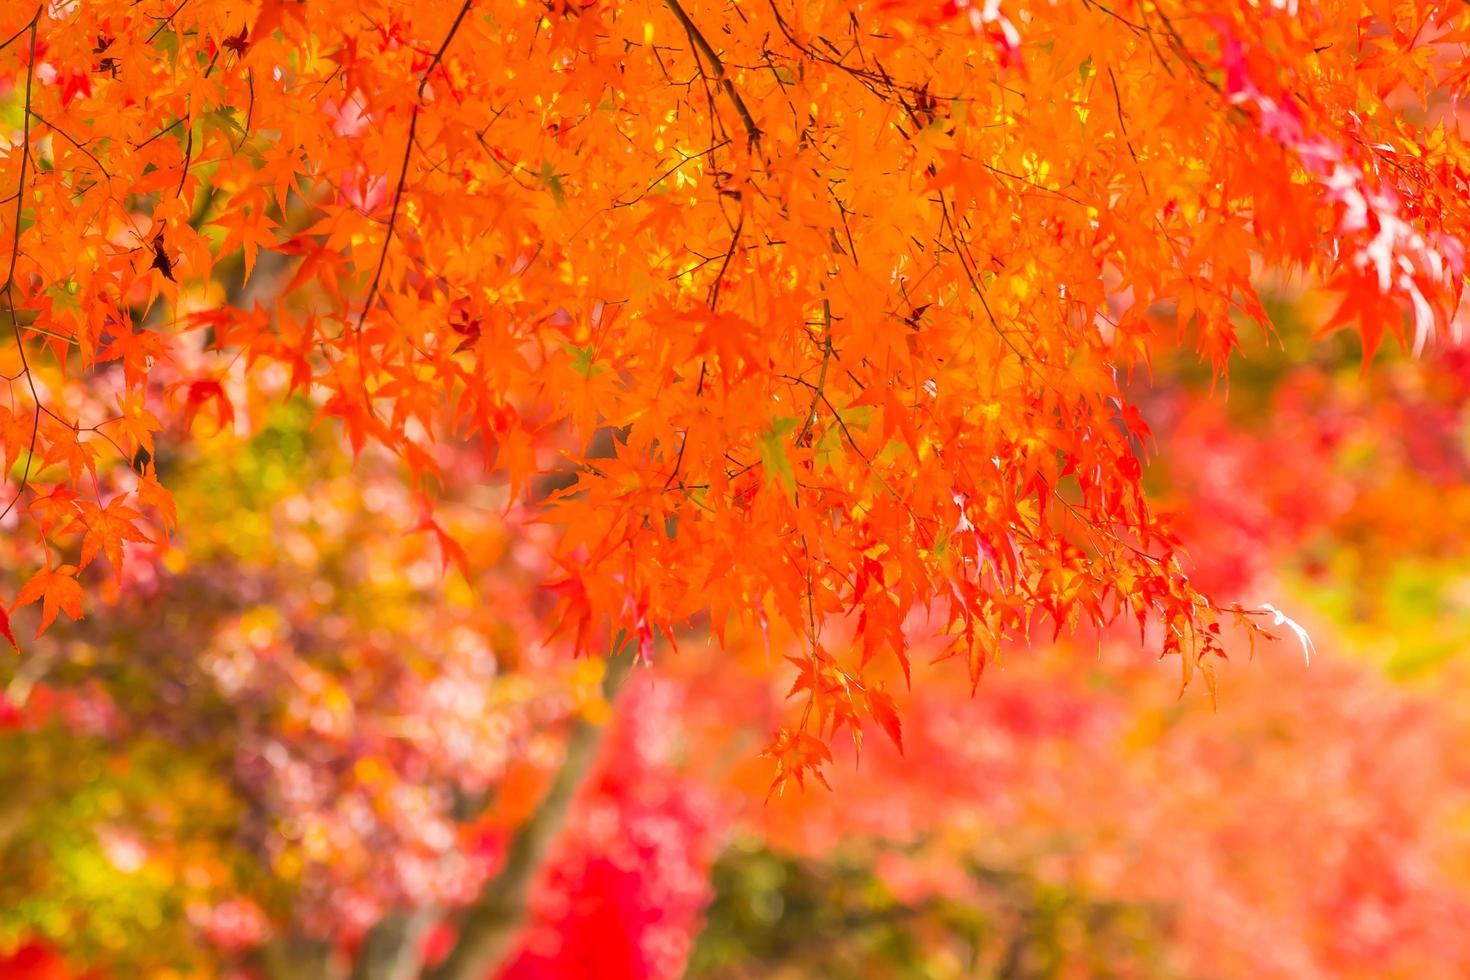 belas árvores de bordo no outono foto